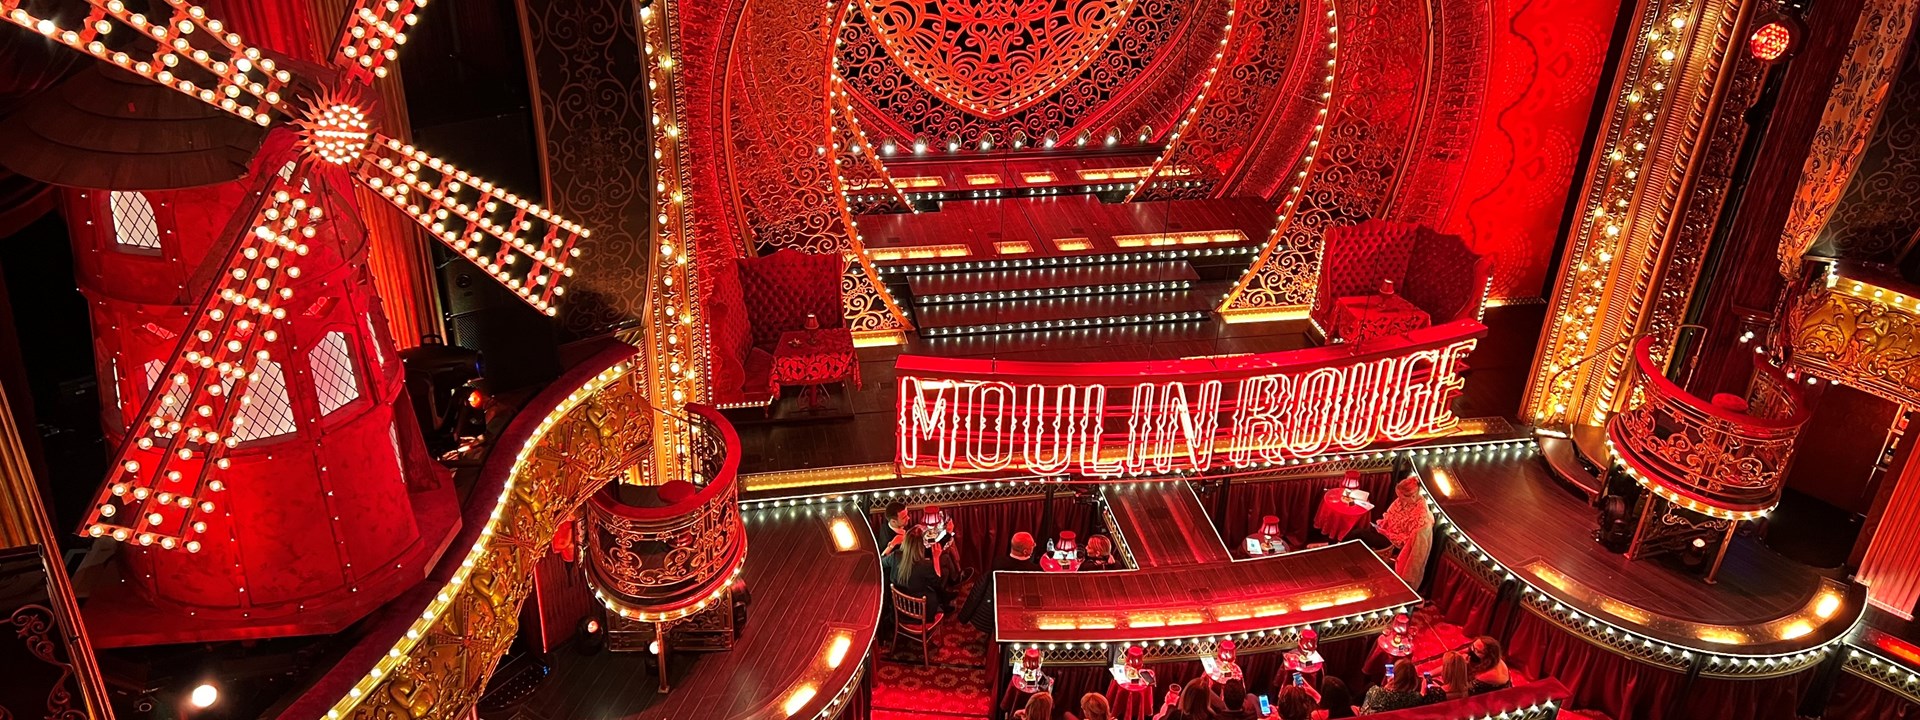 Moulin rouge inside